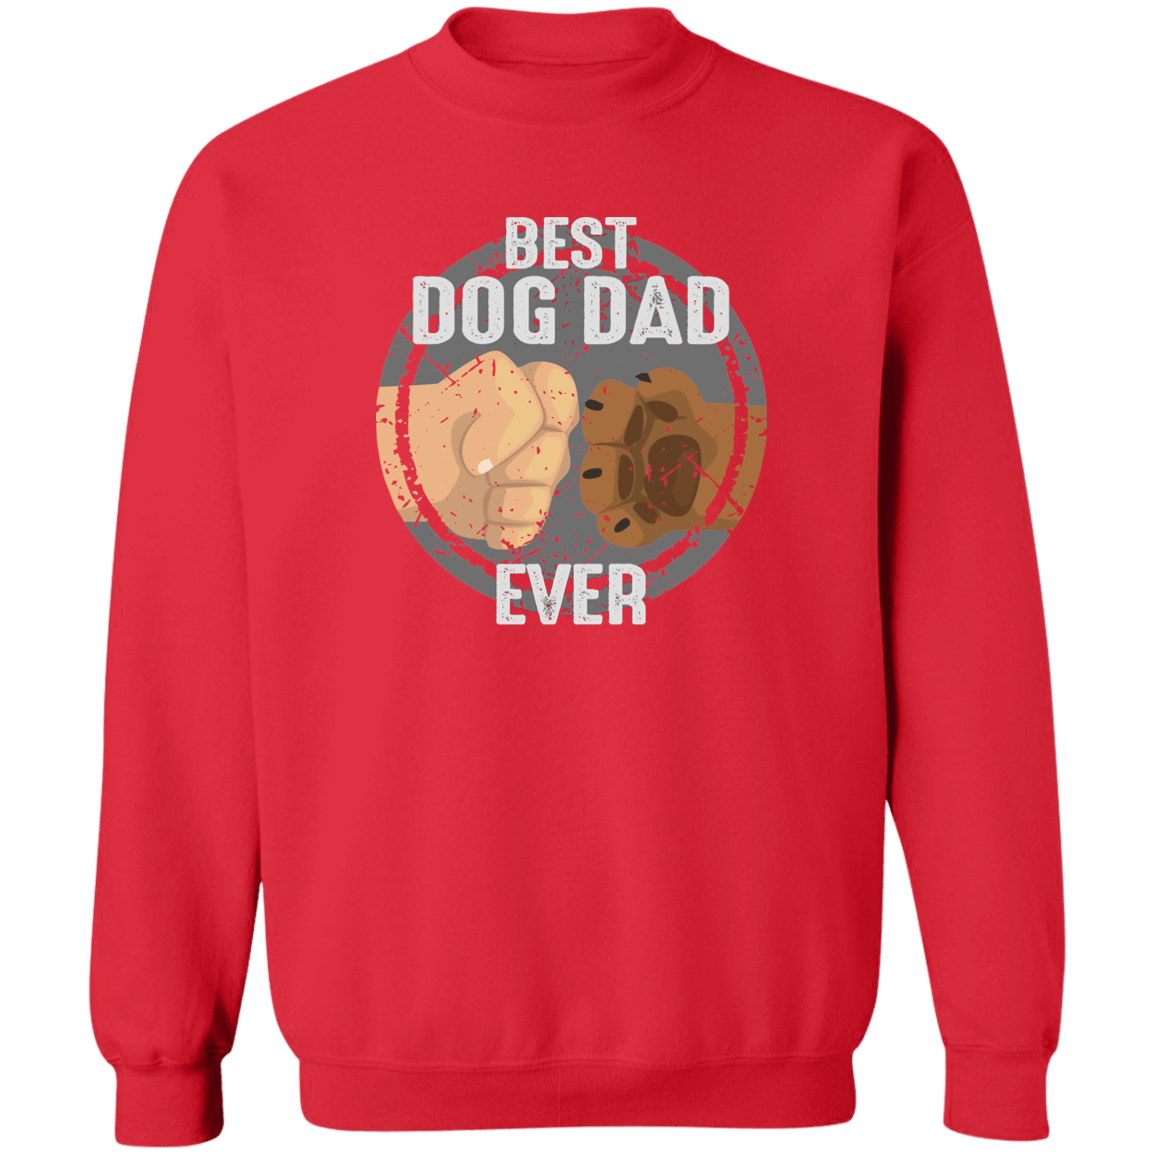 Best Dog Dad Ever - Sweatshirt.